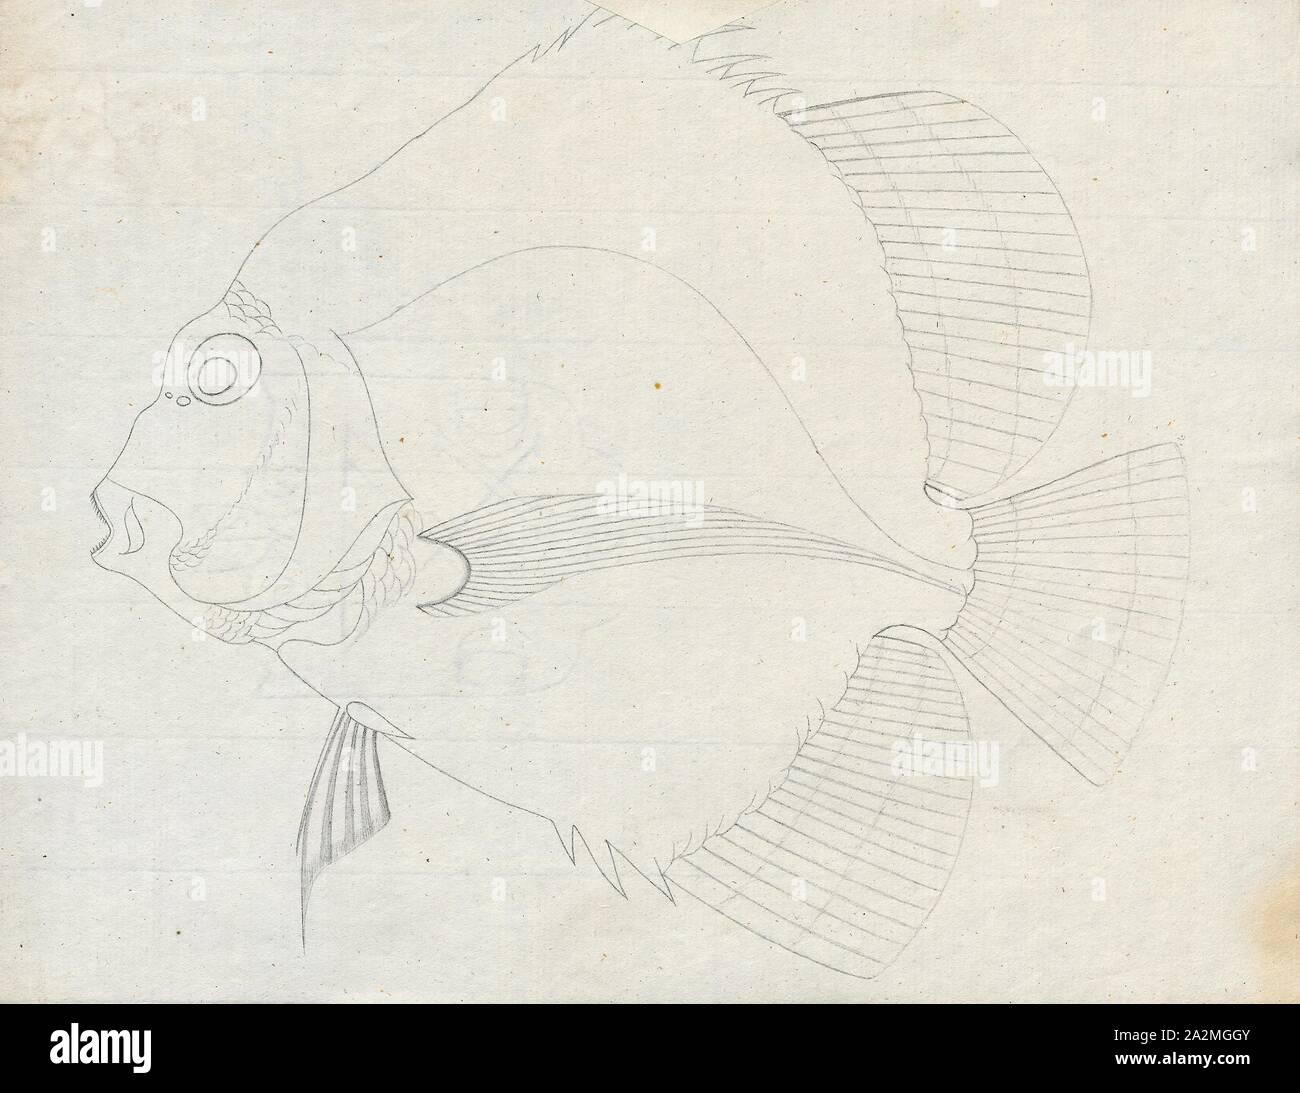 Drepane, Drucken, Drepane punctata punctata, allgemein bekannt als beschmutzt sicklefish, ist ein Fisch aus dem Indopazifik und Nordaustralien., 1700-1880 Stockfoto